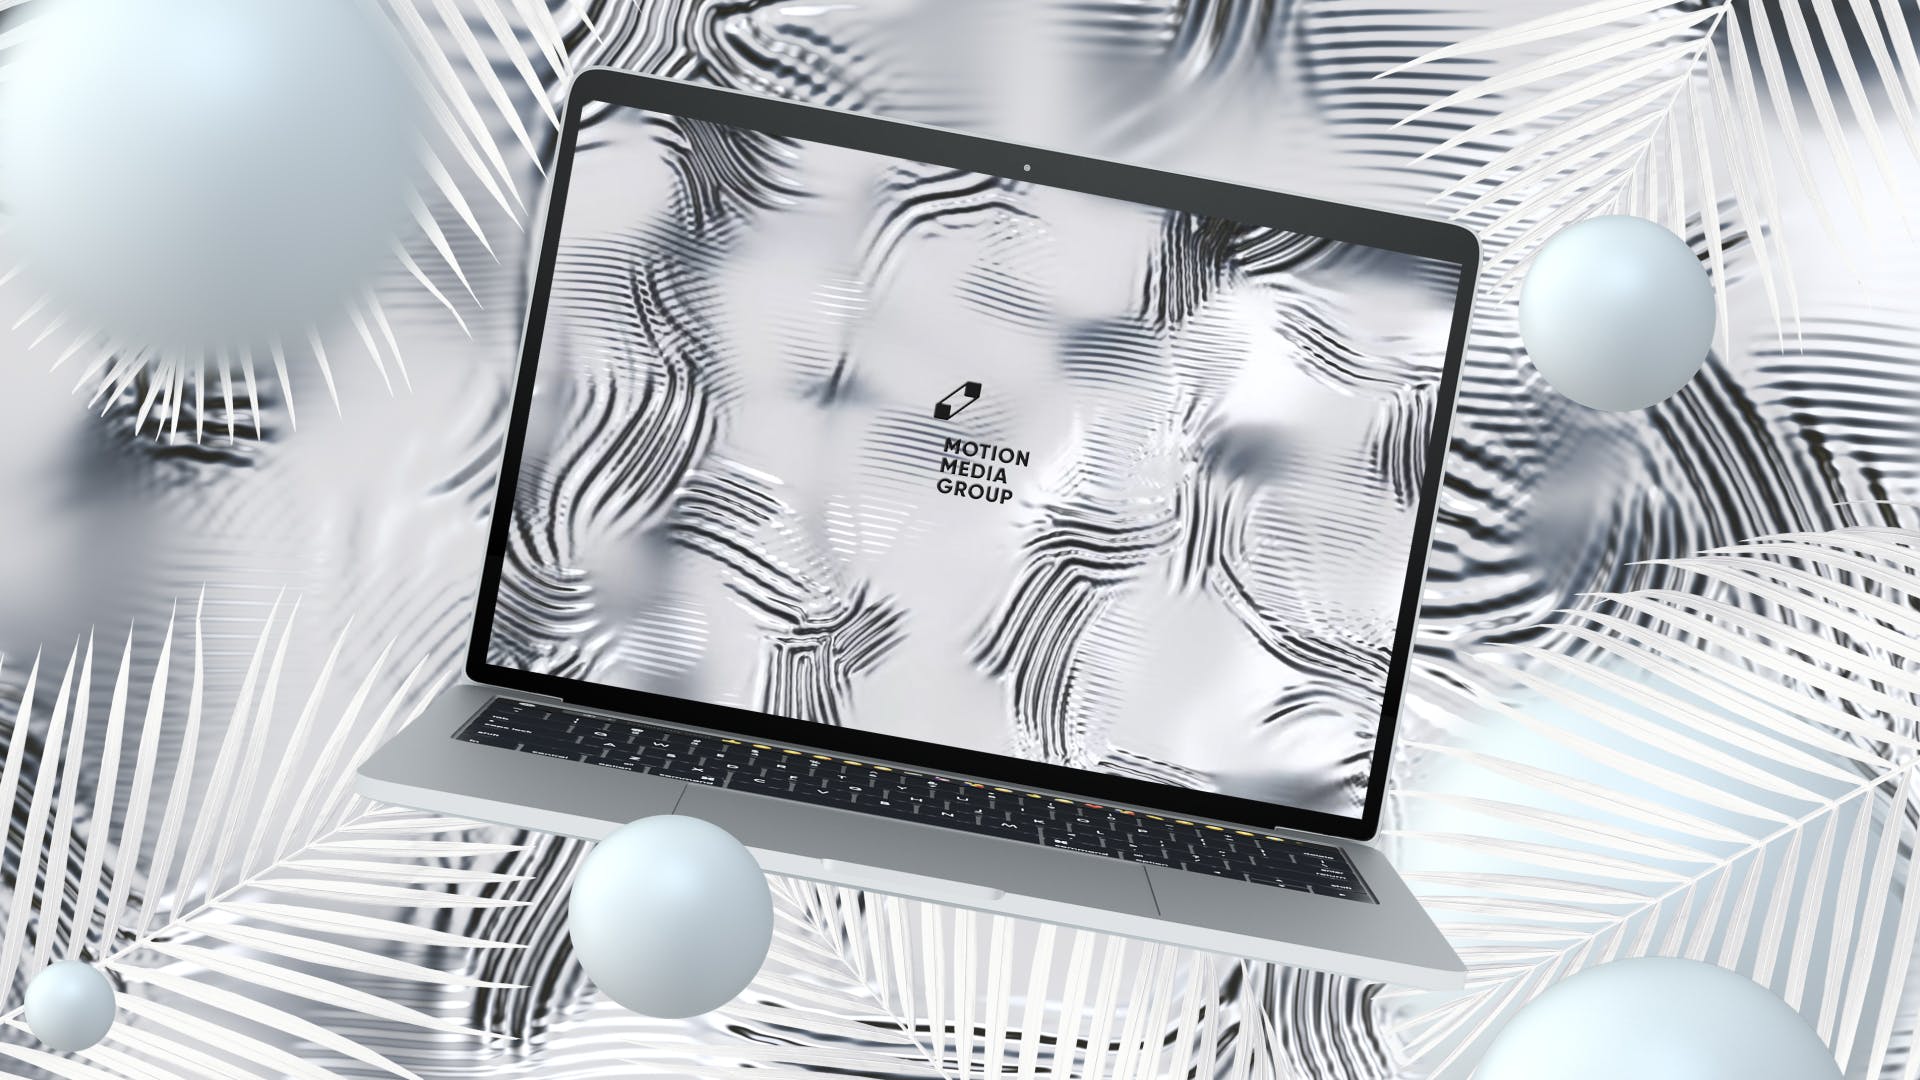 优雅时尚风格3D立体风格笔记本电脑屏幕预览第一素材精选样机 10 Light Laptop Mockups插图(3)